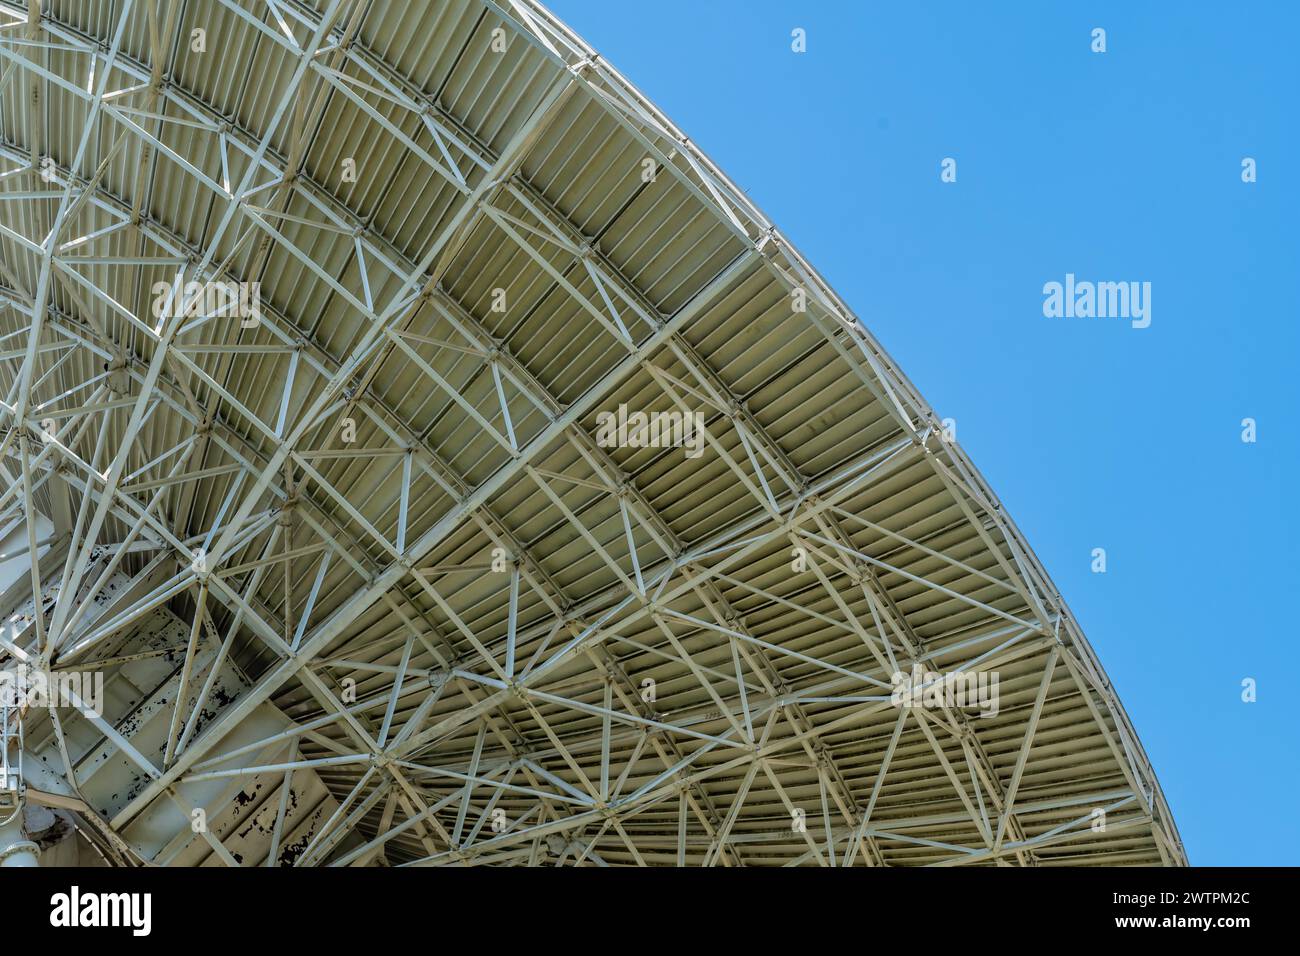 Vue de dessous d'une antenne parabolique massive, mettant en évidence sa conception structurelle, en Corée du Sud Banque D'Images